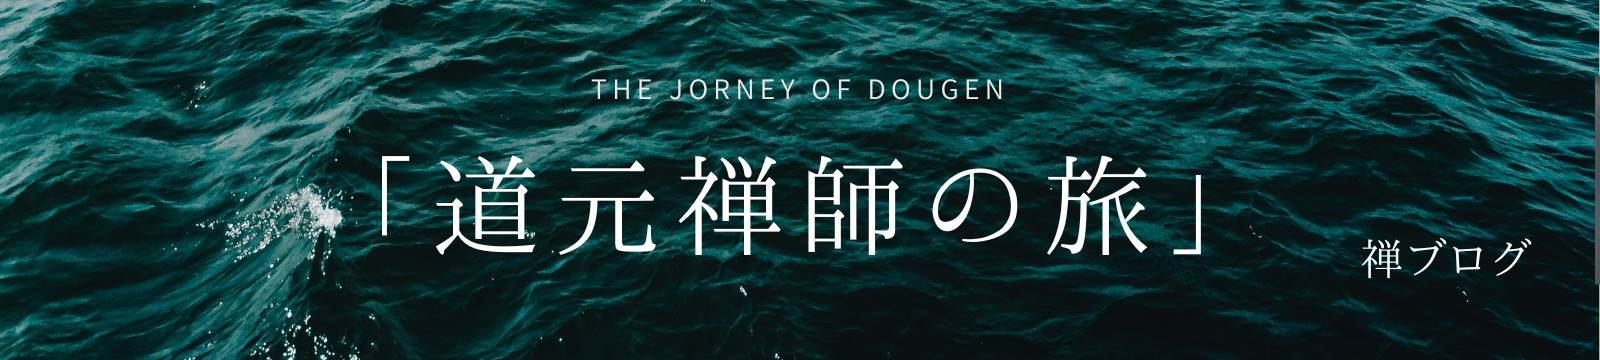 「道元禅師の旅」THE JOURNEY OF DOUGEN